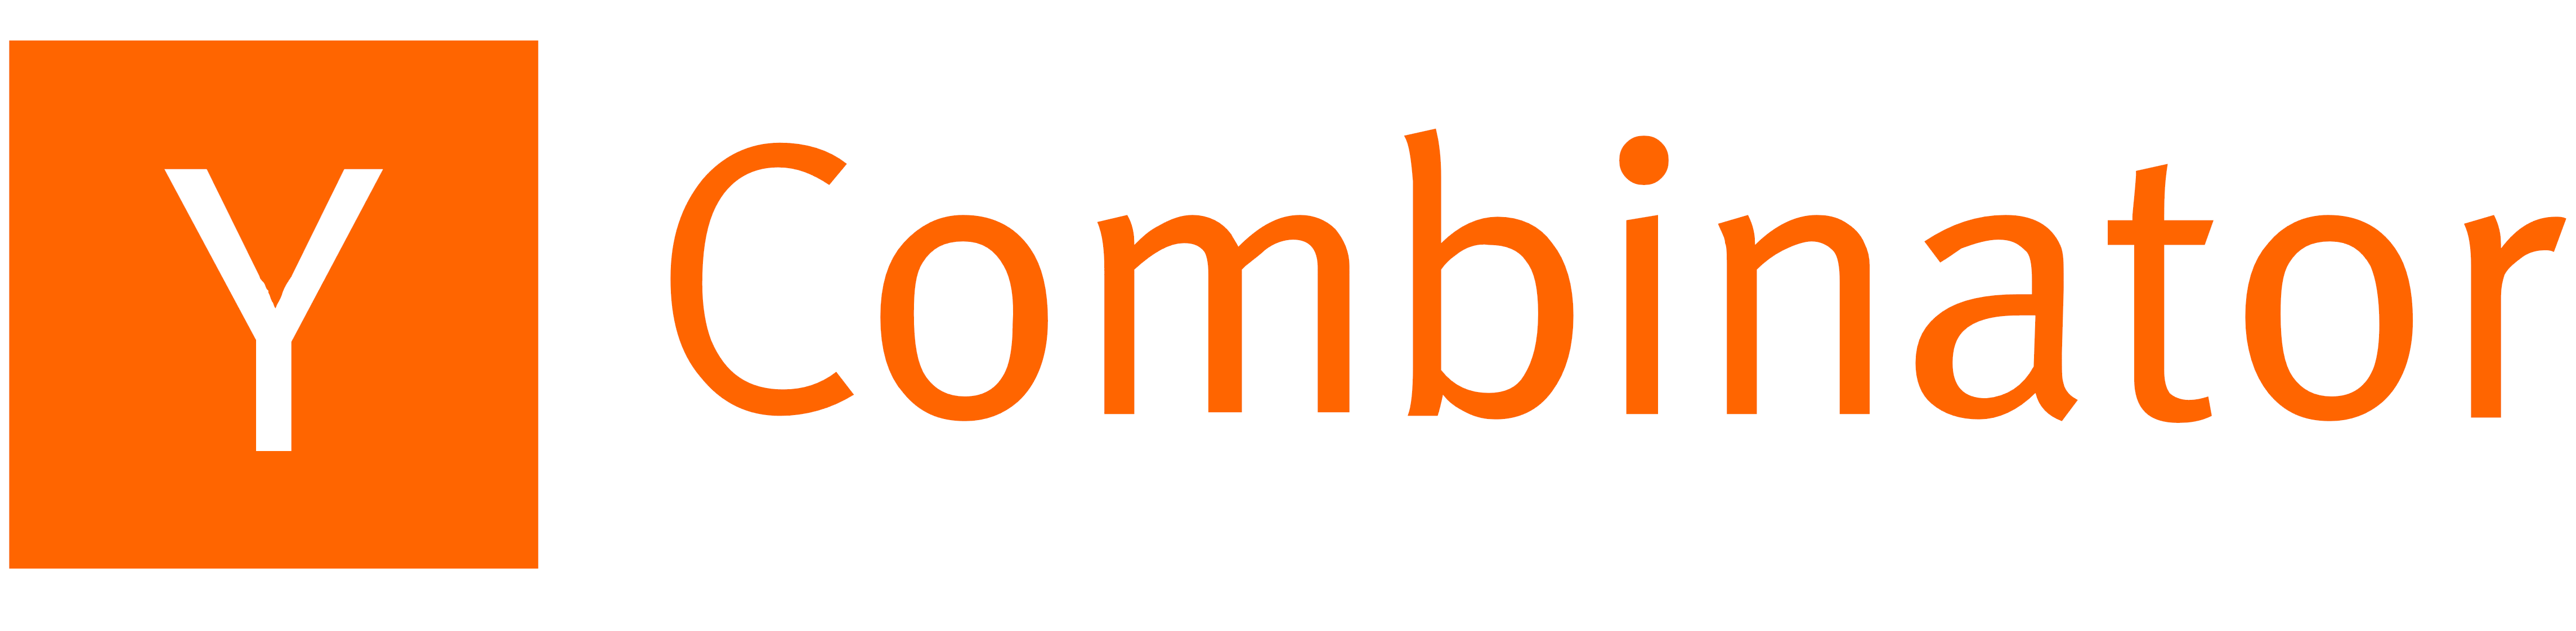 Y Combinator logo, logotype